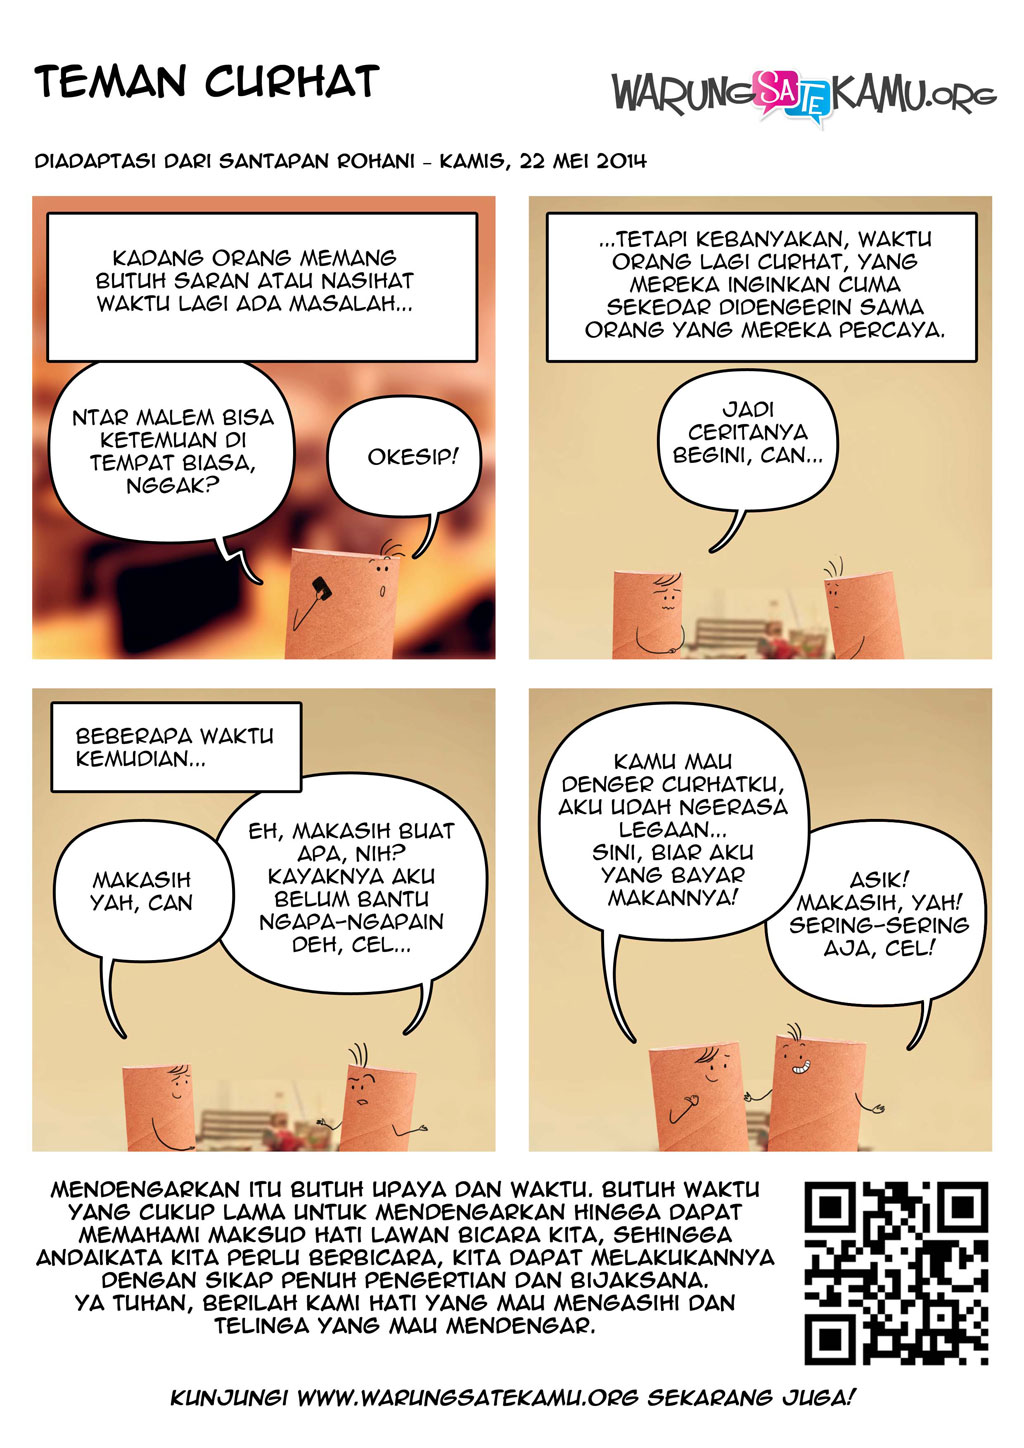 Komik-Strip-WarungSateKamu-20140522-Teman-Curhat